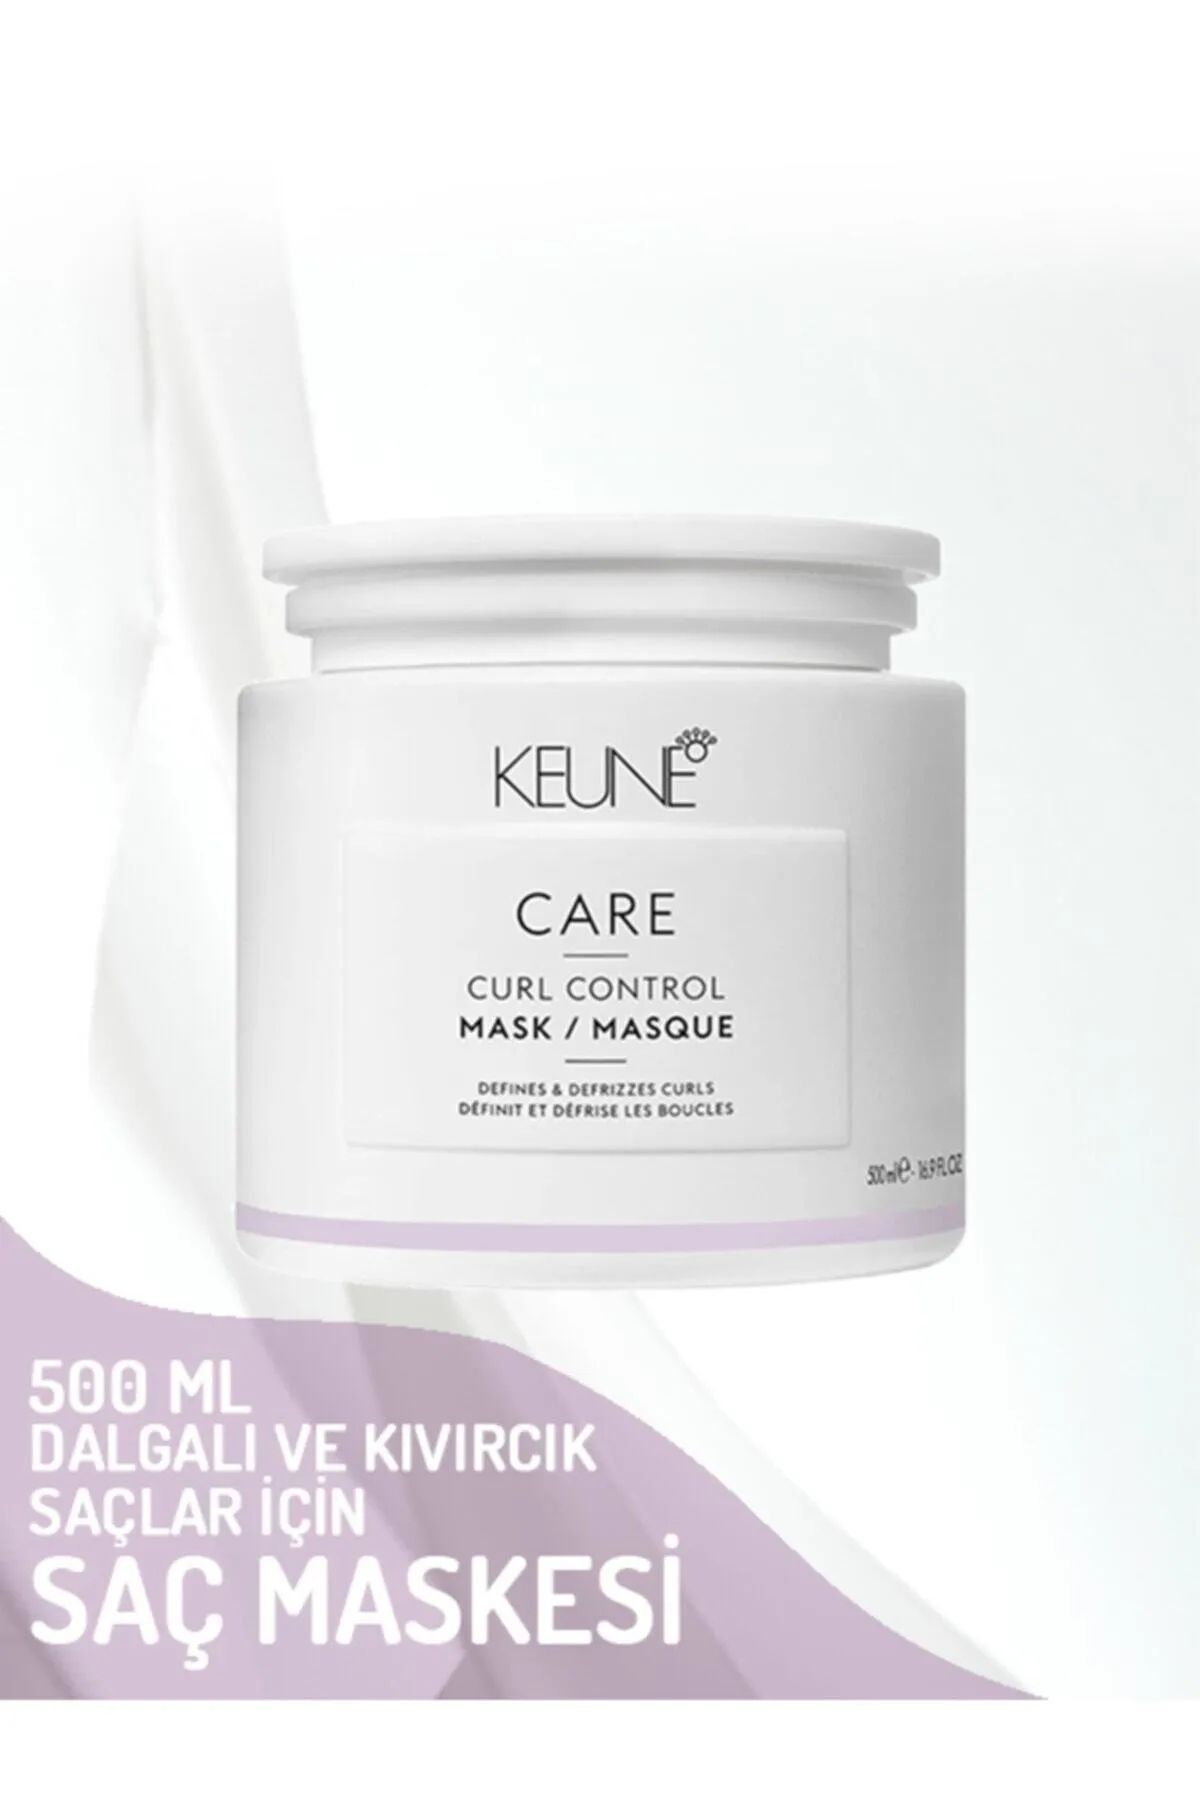 Keune Curl Control Kuru Kıvırcık Saçlar İçin Nemlendiren İçeriği Zengin Maske 500 ml 16.9 fl oz CYT6